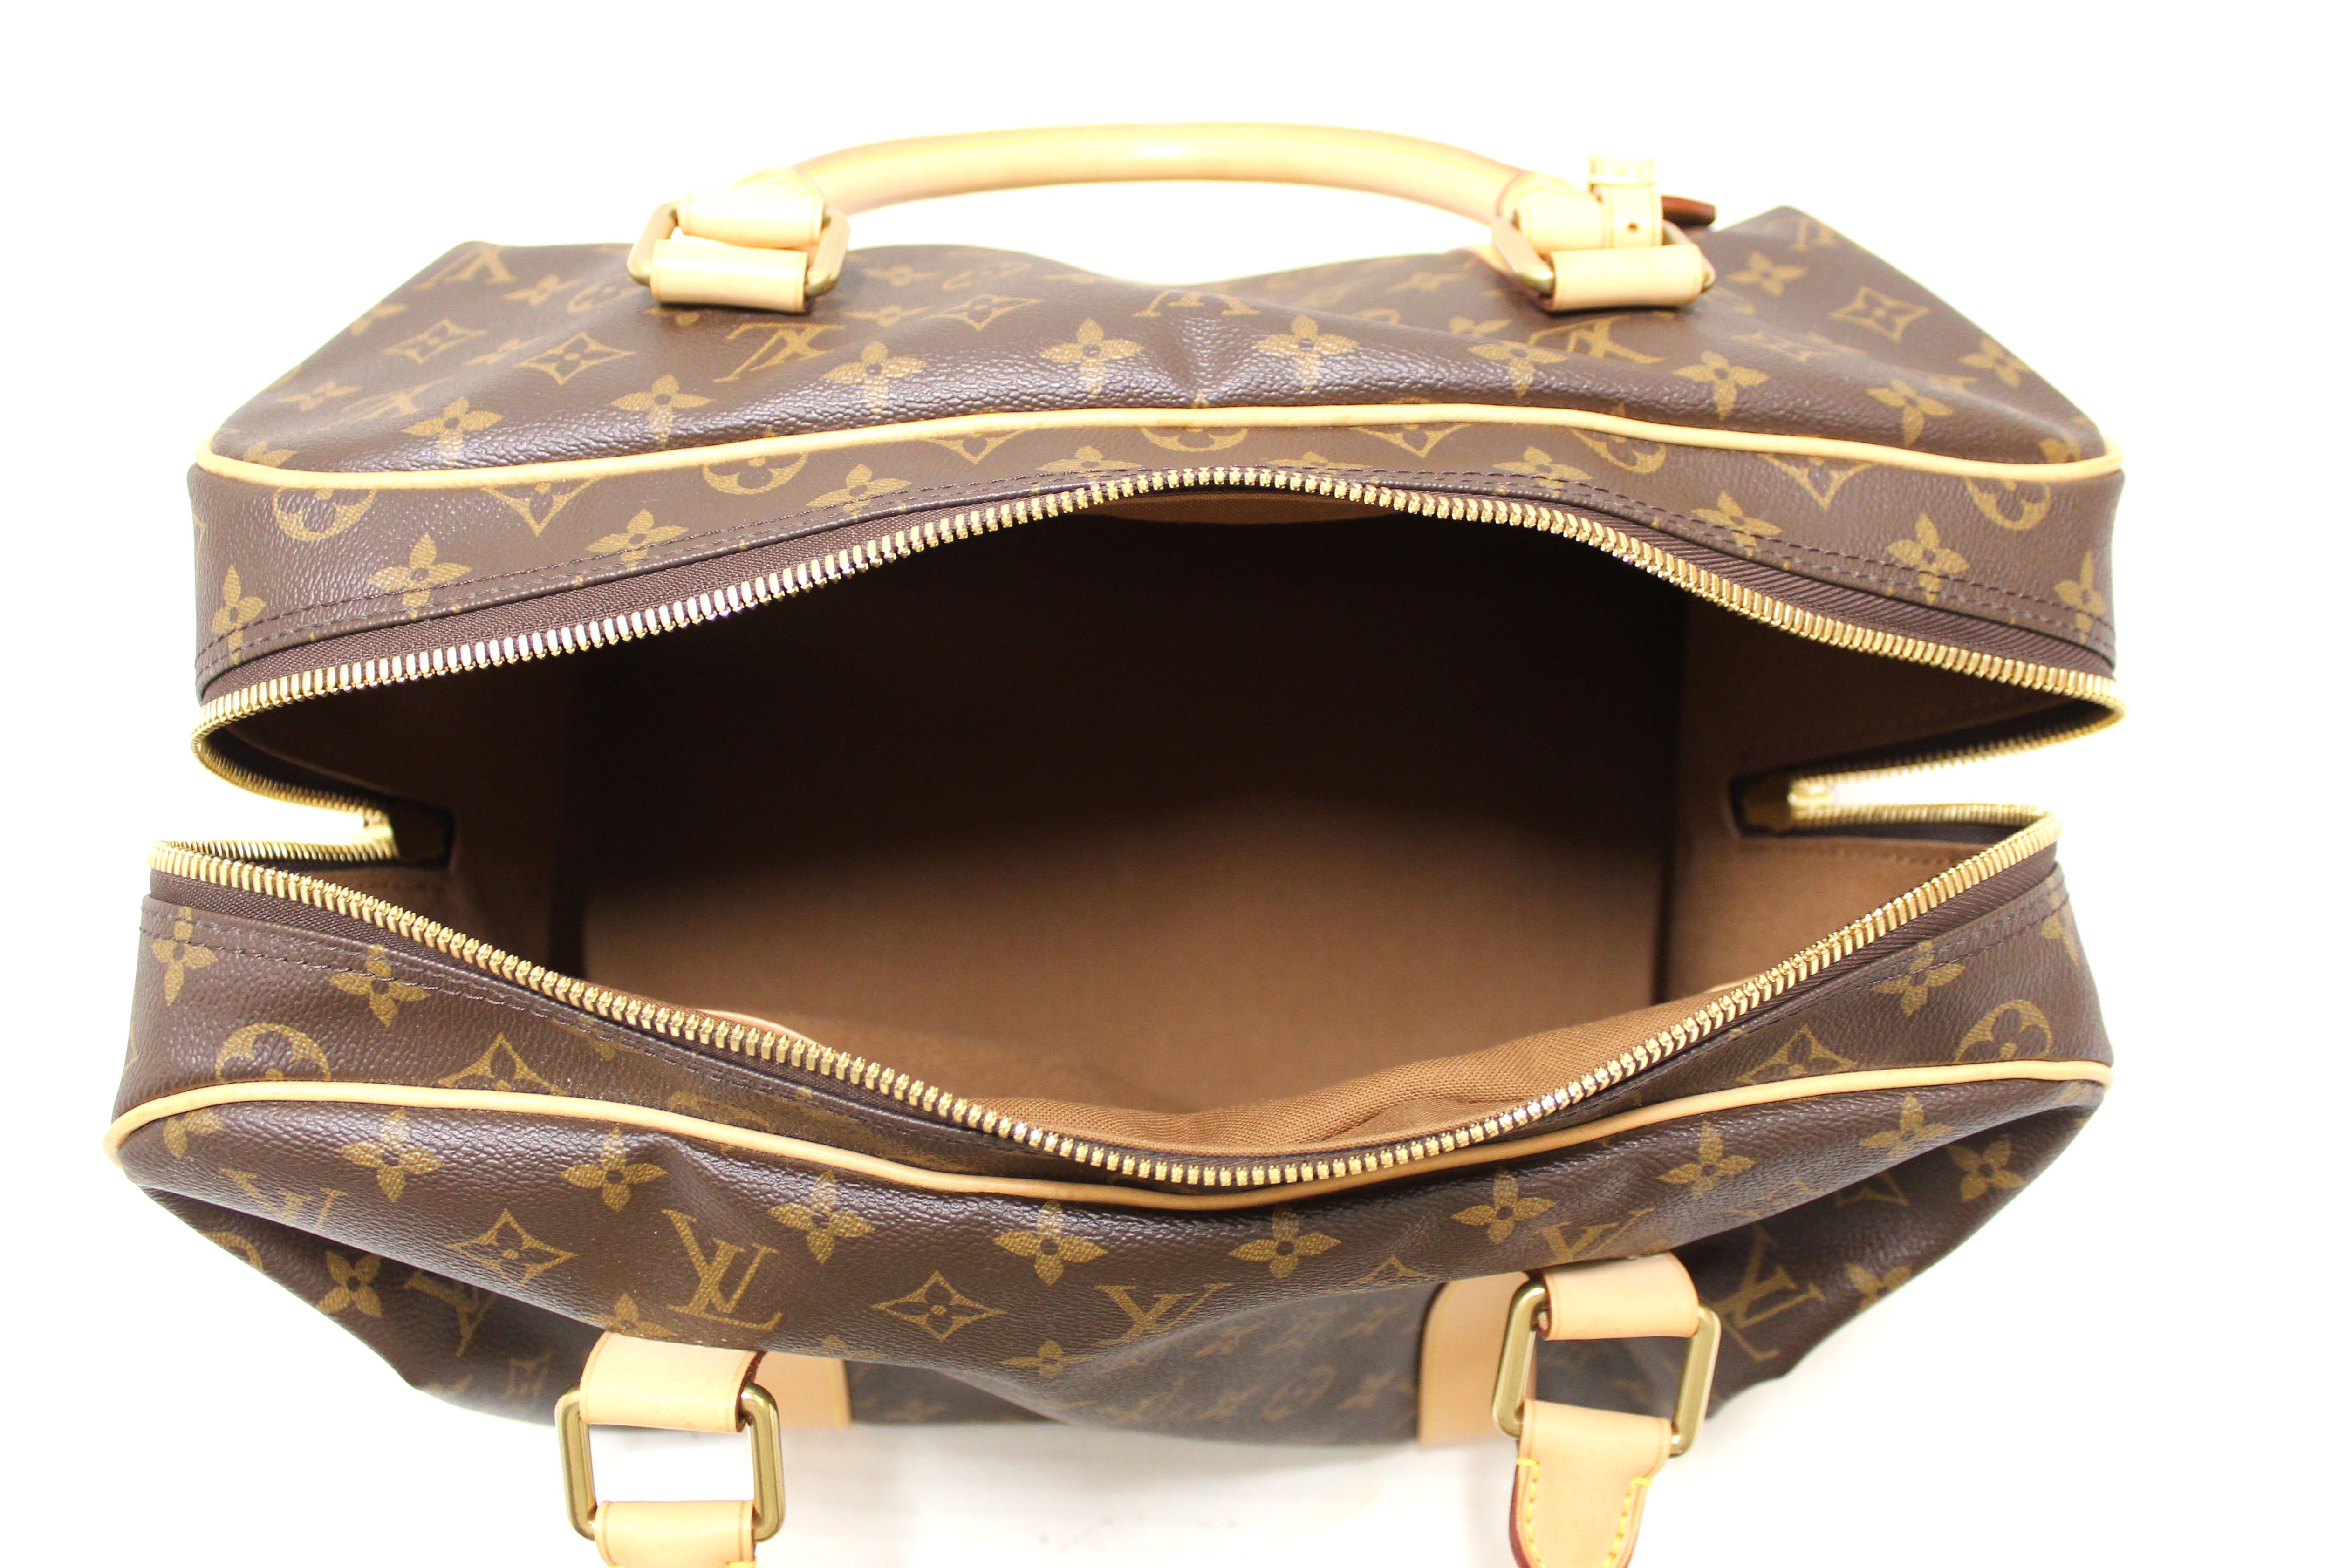 Authentic Louis Vuitton Monogram Canvas Carryall Duffle Travel Bag